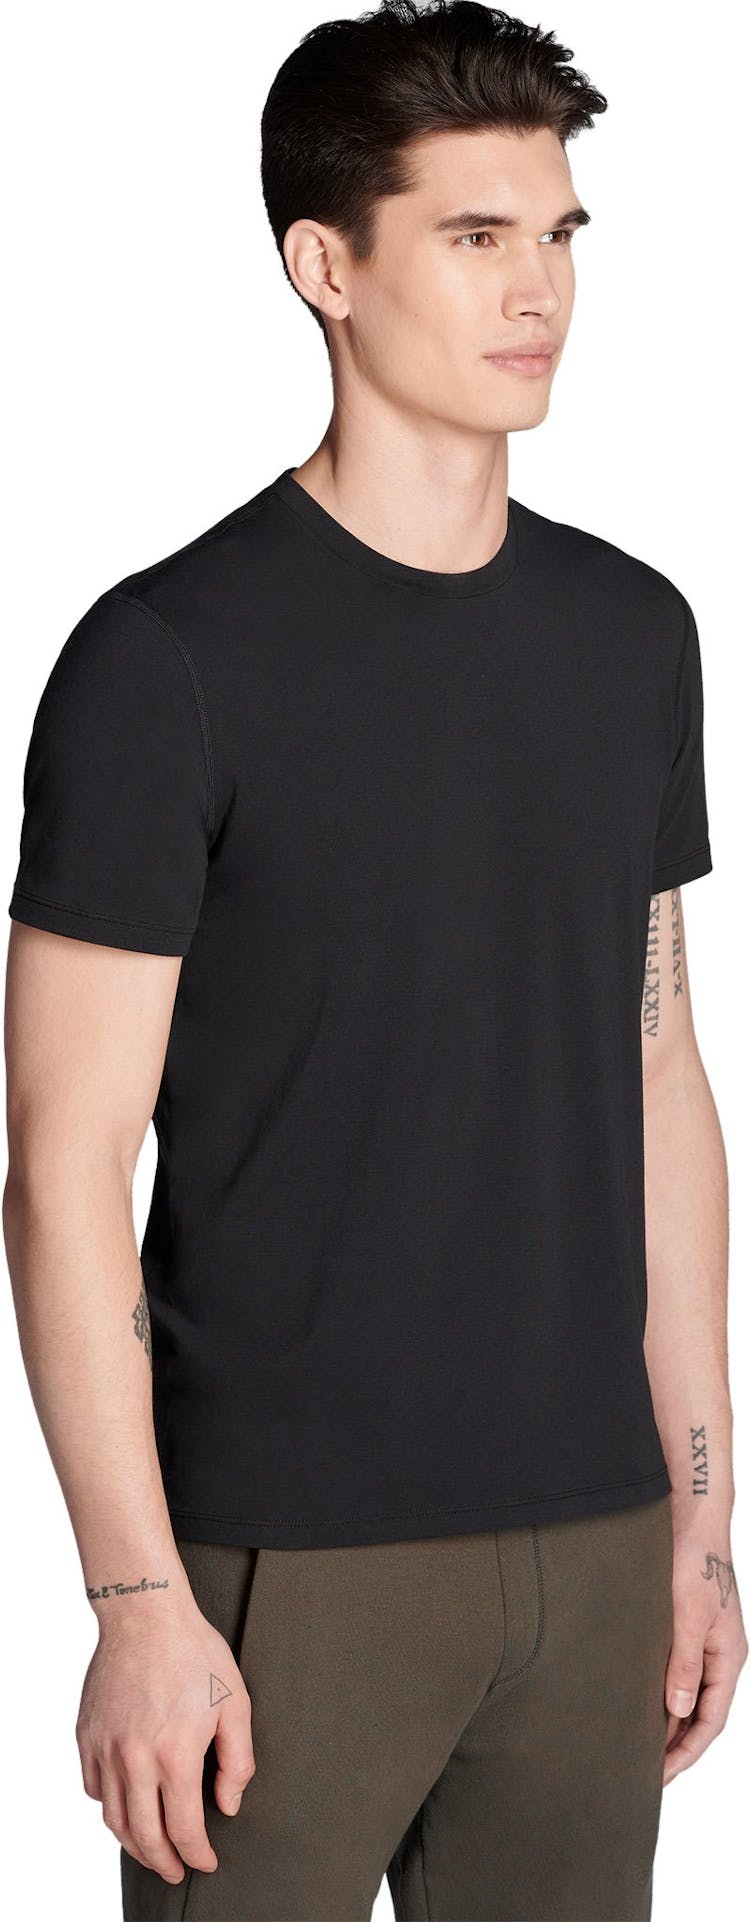 Numéro de l'image de la galerie de produits 3 pour le produit T-shirt Standard Issue - Unisex